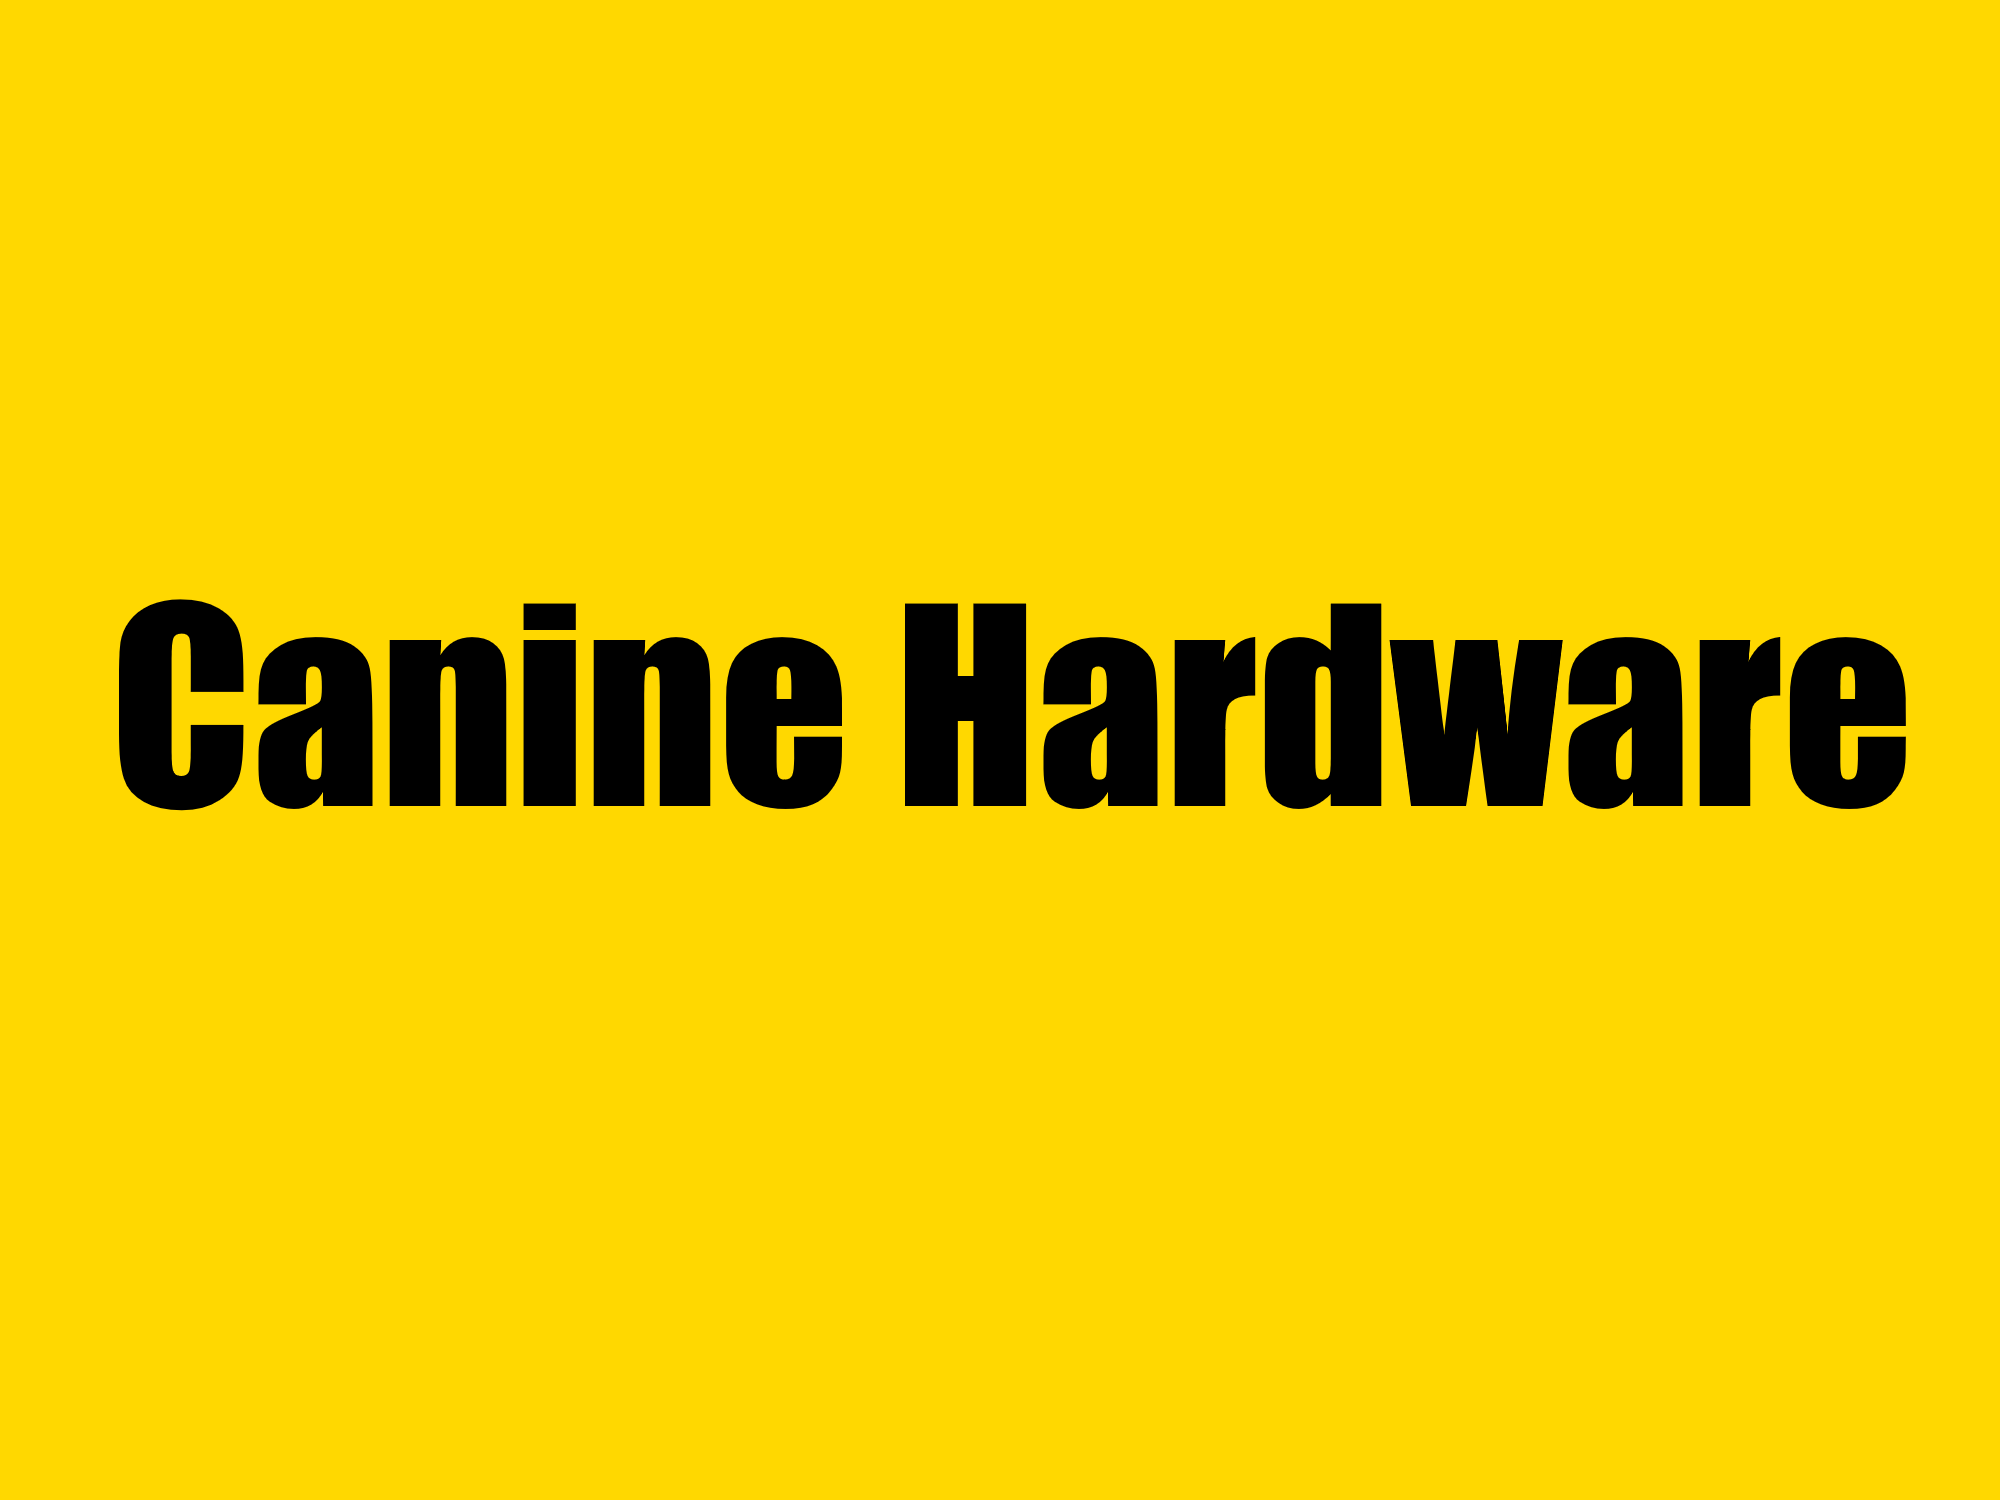 Canine Hardware